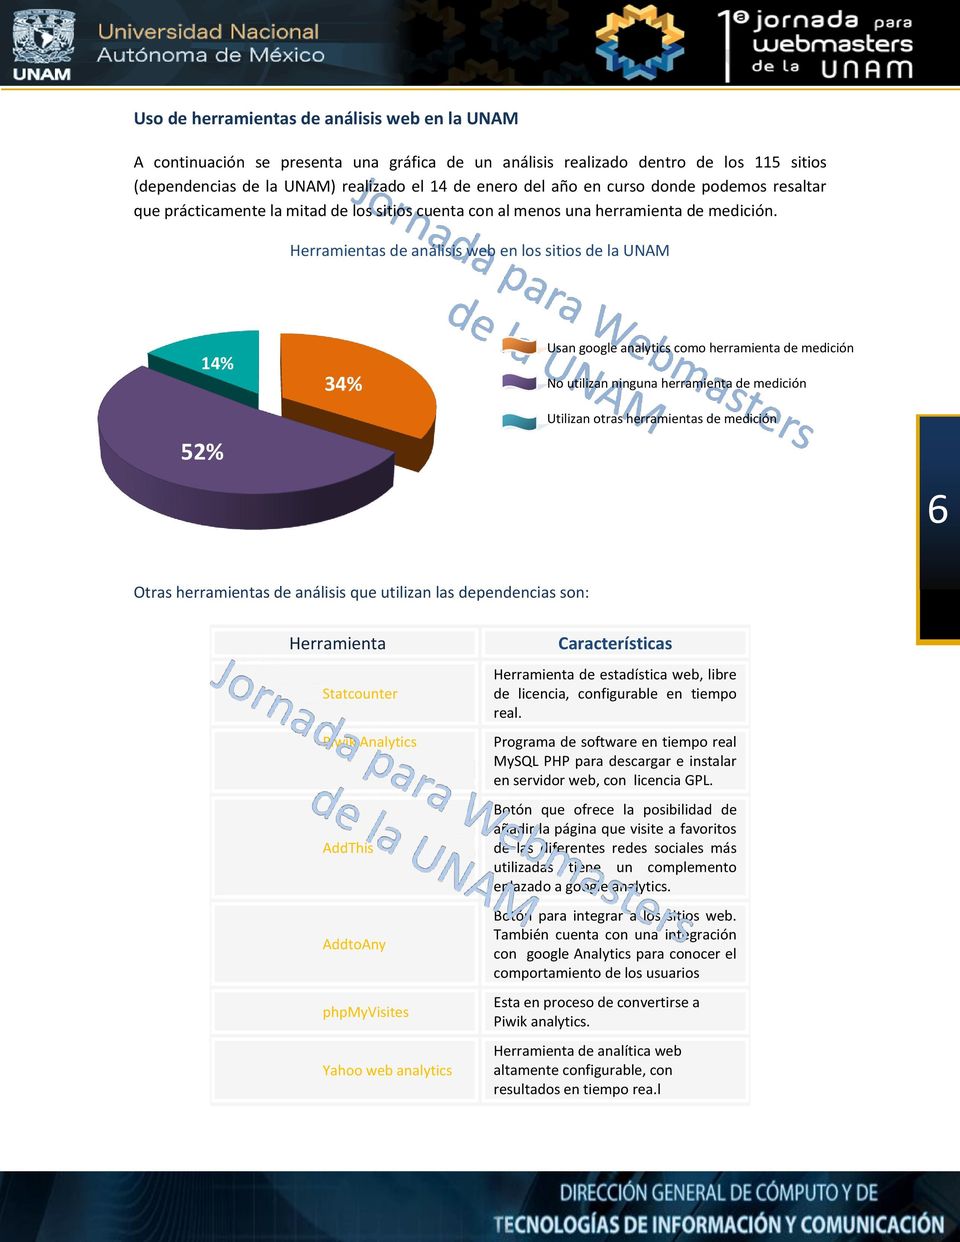 Herramientas de análisis web en los sitios de la UNAM 14% 34% Usan google analytics como herramienta de medición No utilizan ninguna herramienta de medición 52% Utilizan otras herramientas de